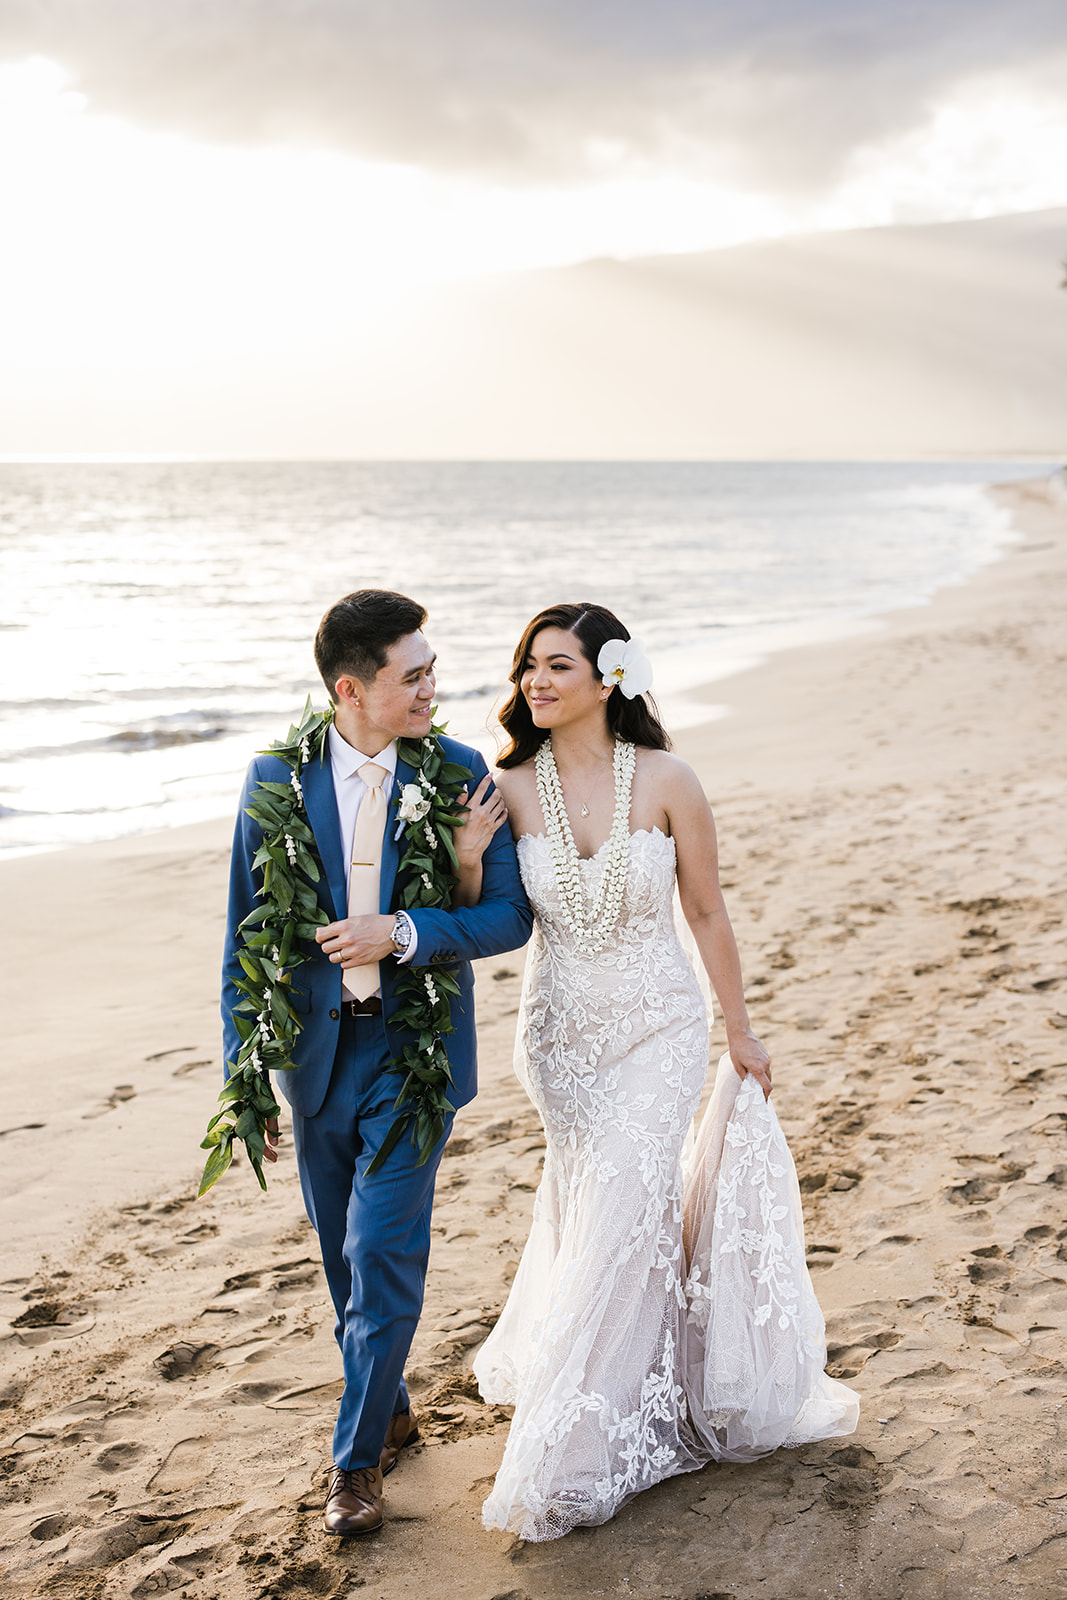 Hawaiian wedding traditions